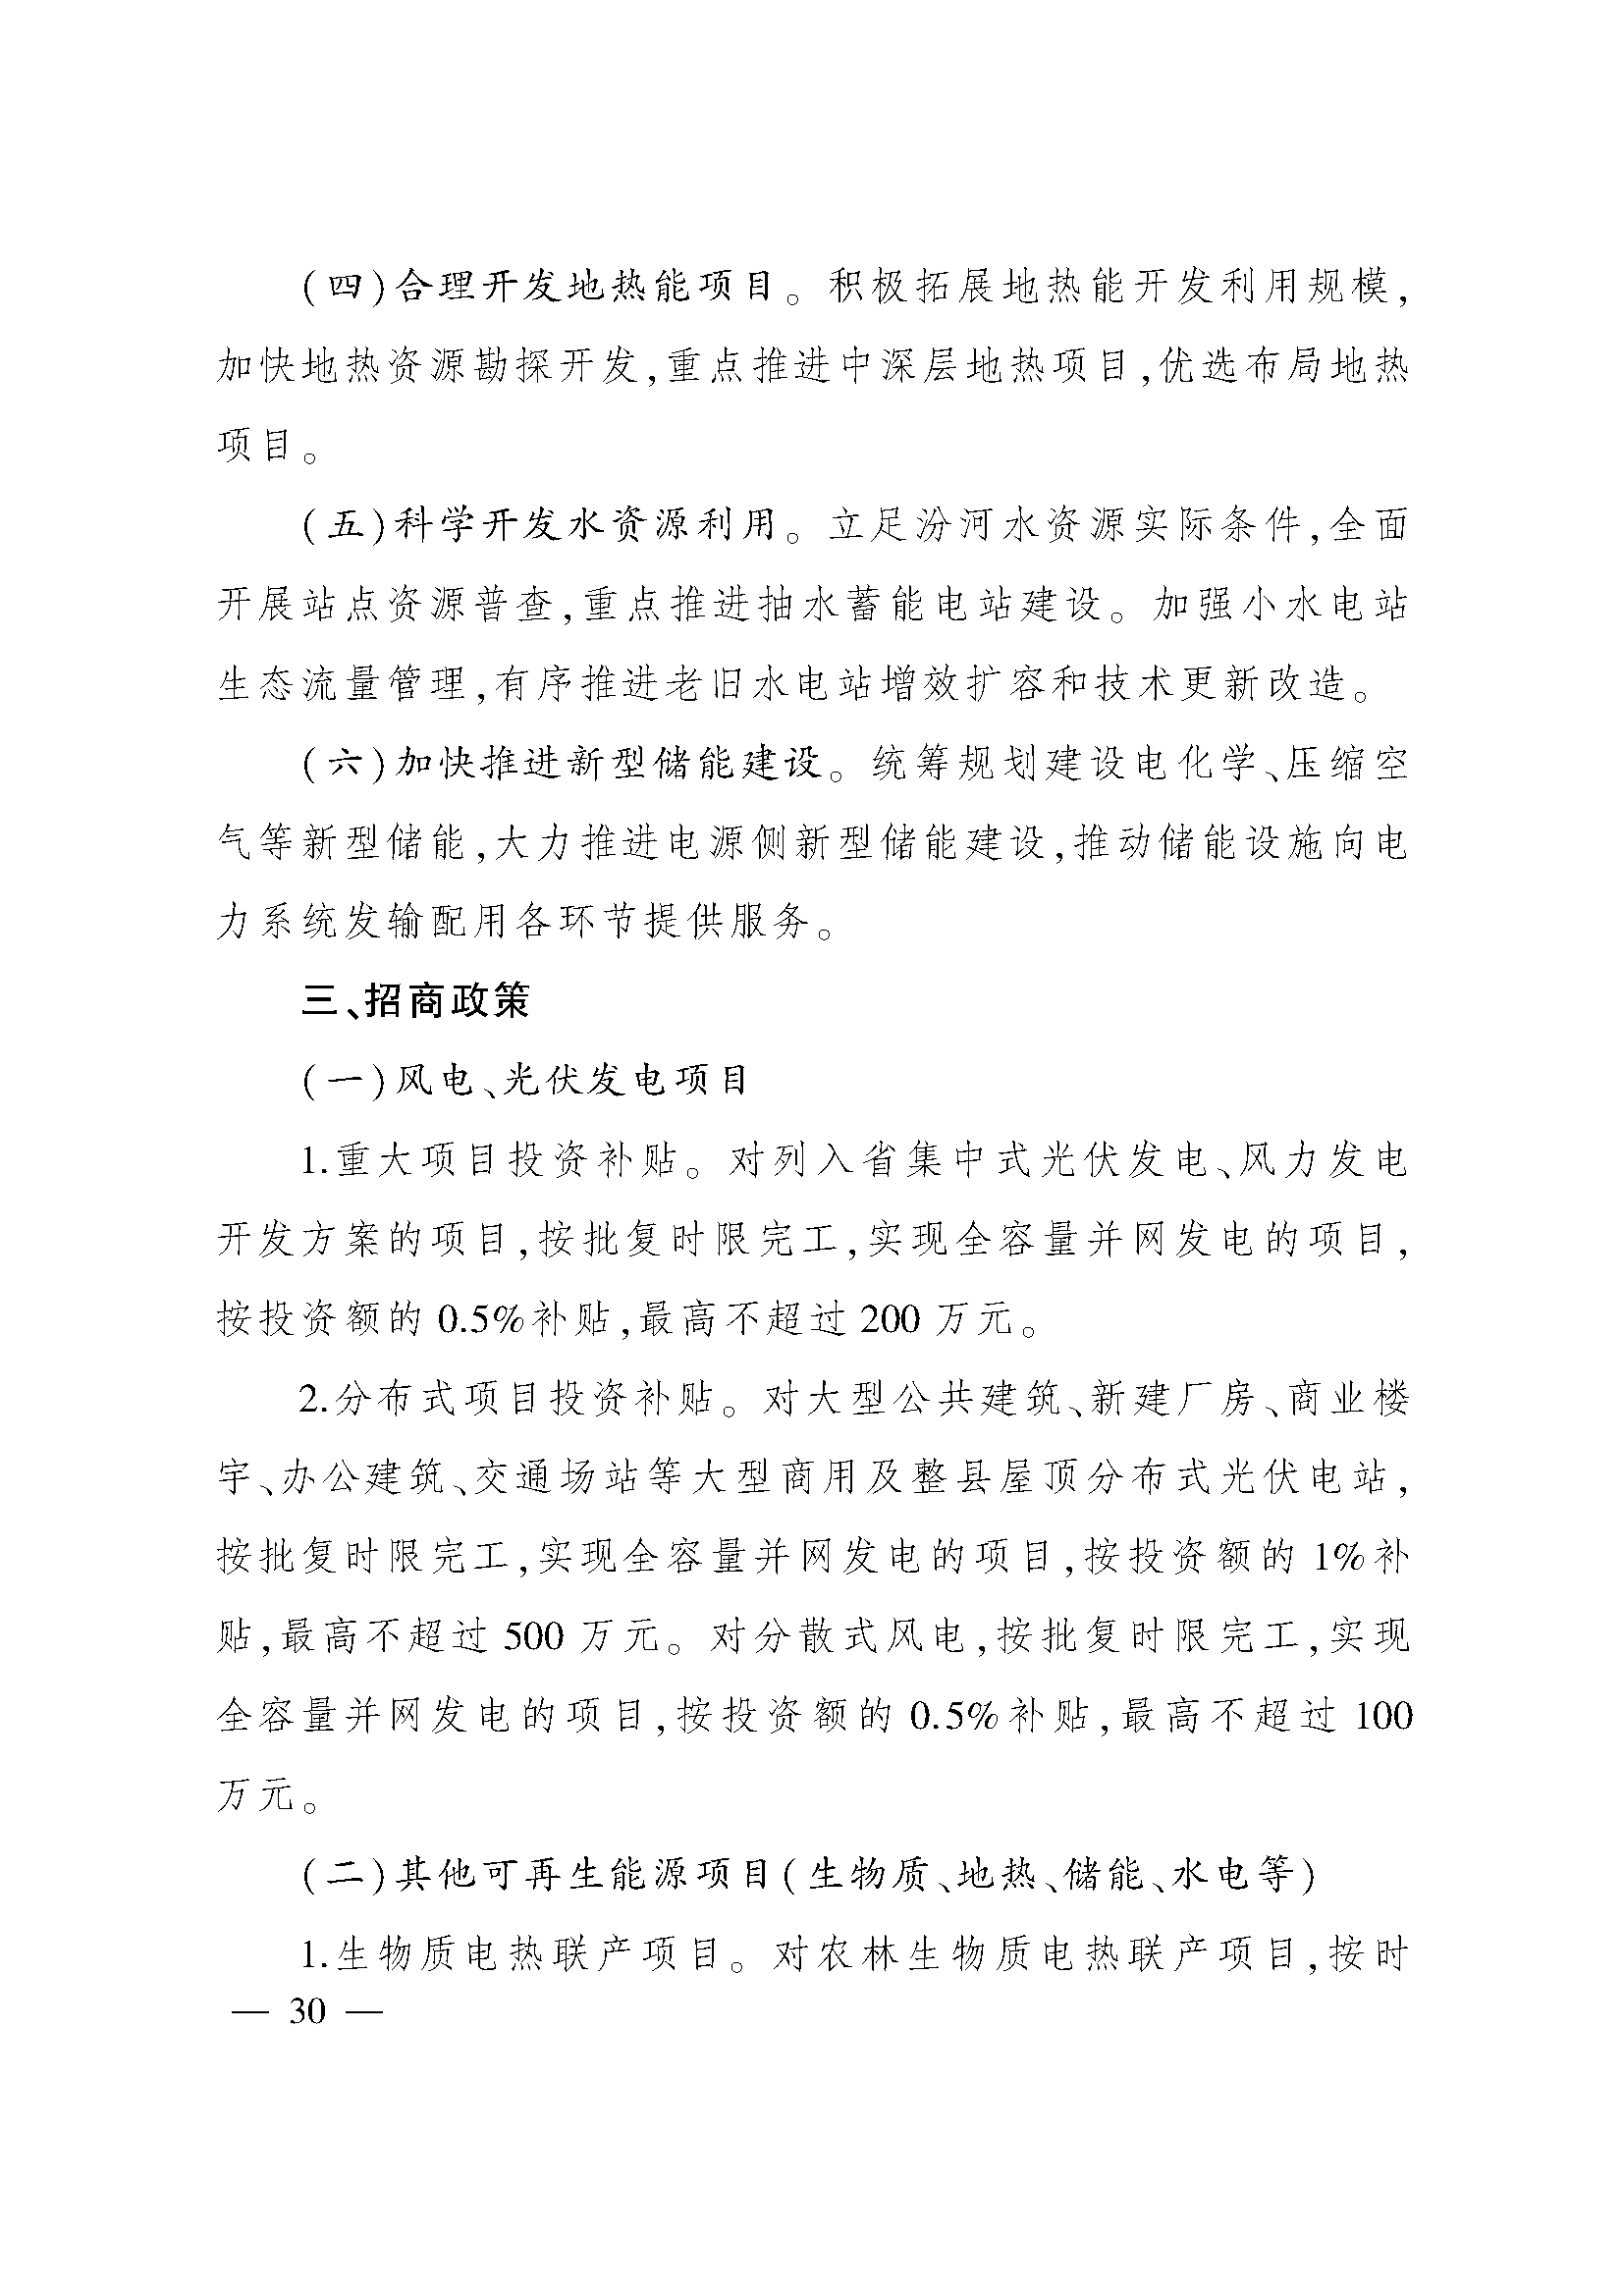 太原市人民政府办公室关于印发太原市招商引资若干措施的通知(图30)